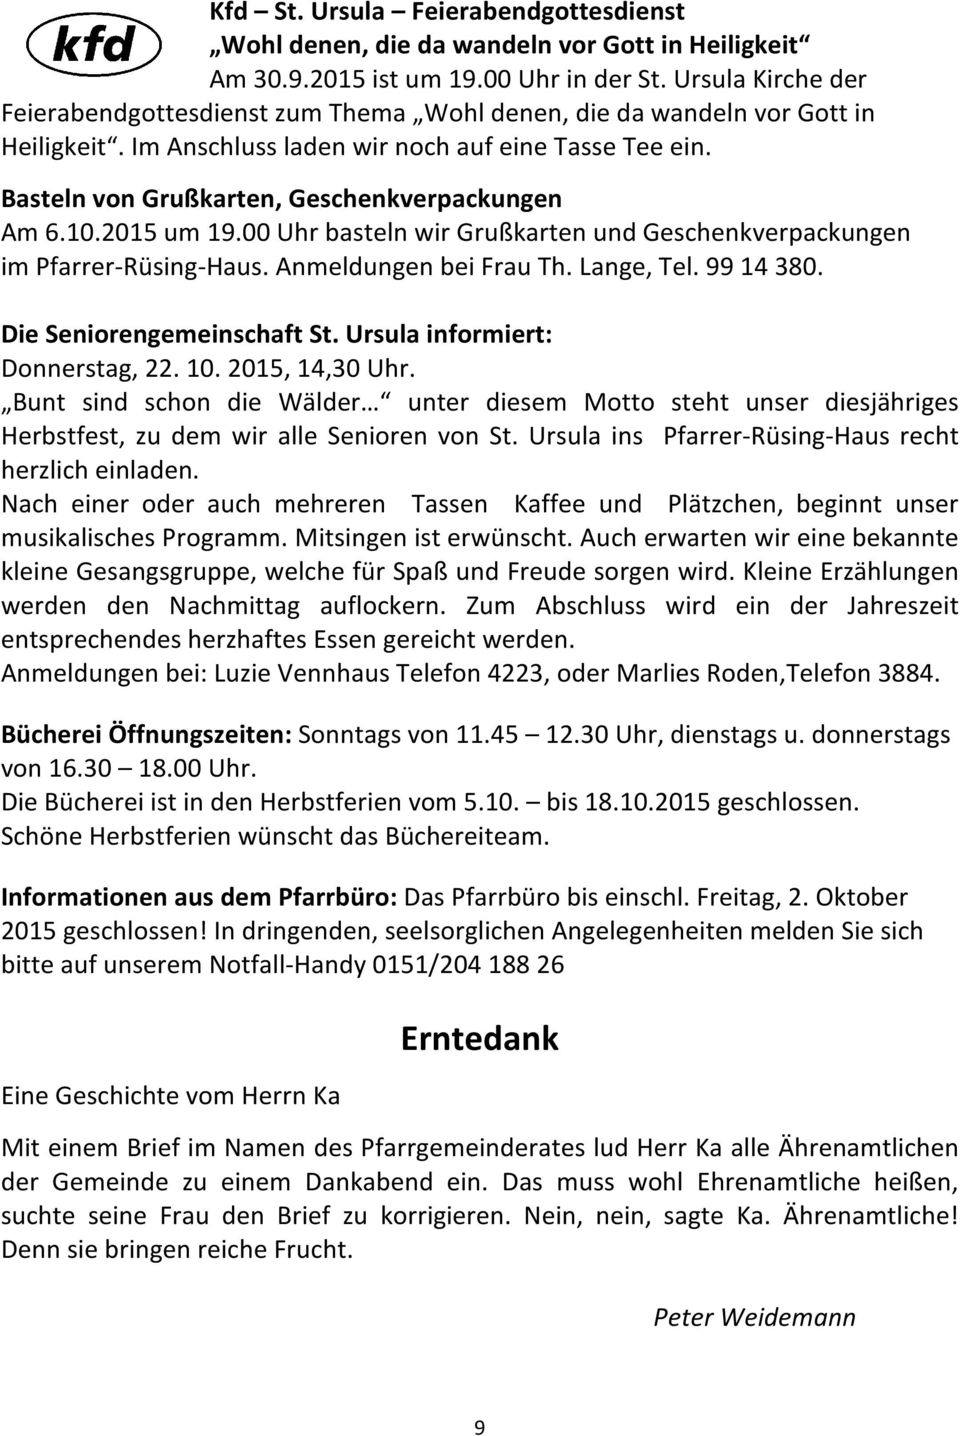 Basteln von Grußkarten, Geschenkverpackungen Am 6.10.2015 um 19.00 Uhr basteln wir Grußkarten und Geschenkverpackungen im Pfarrer-Rüsing-Haus. Anmeldungen bei Frau Th. Lange, Tel. 99 14 380.